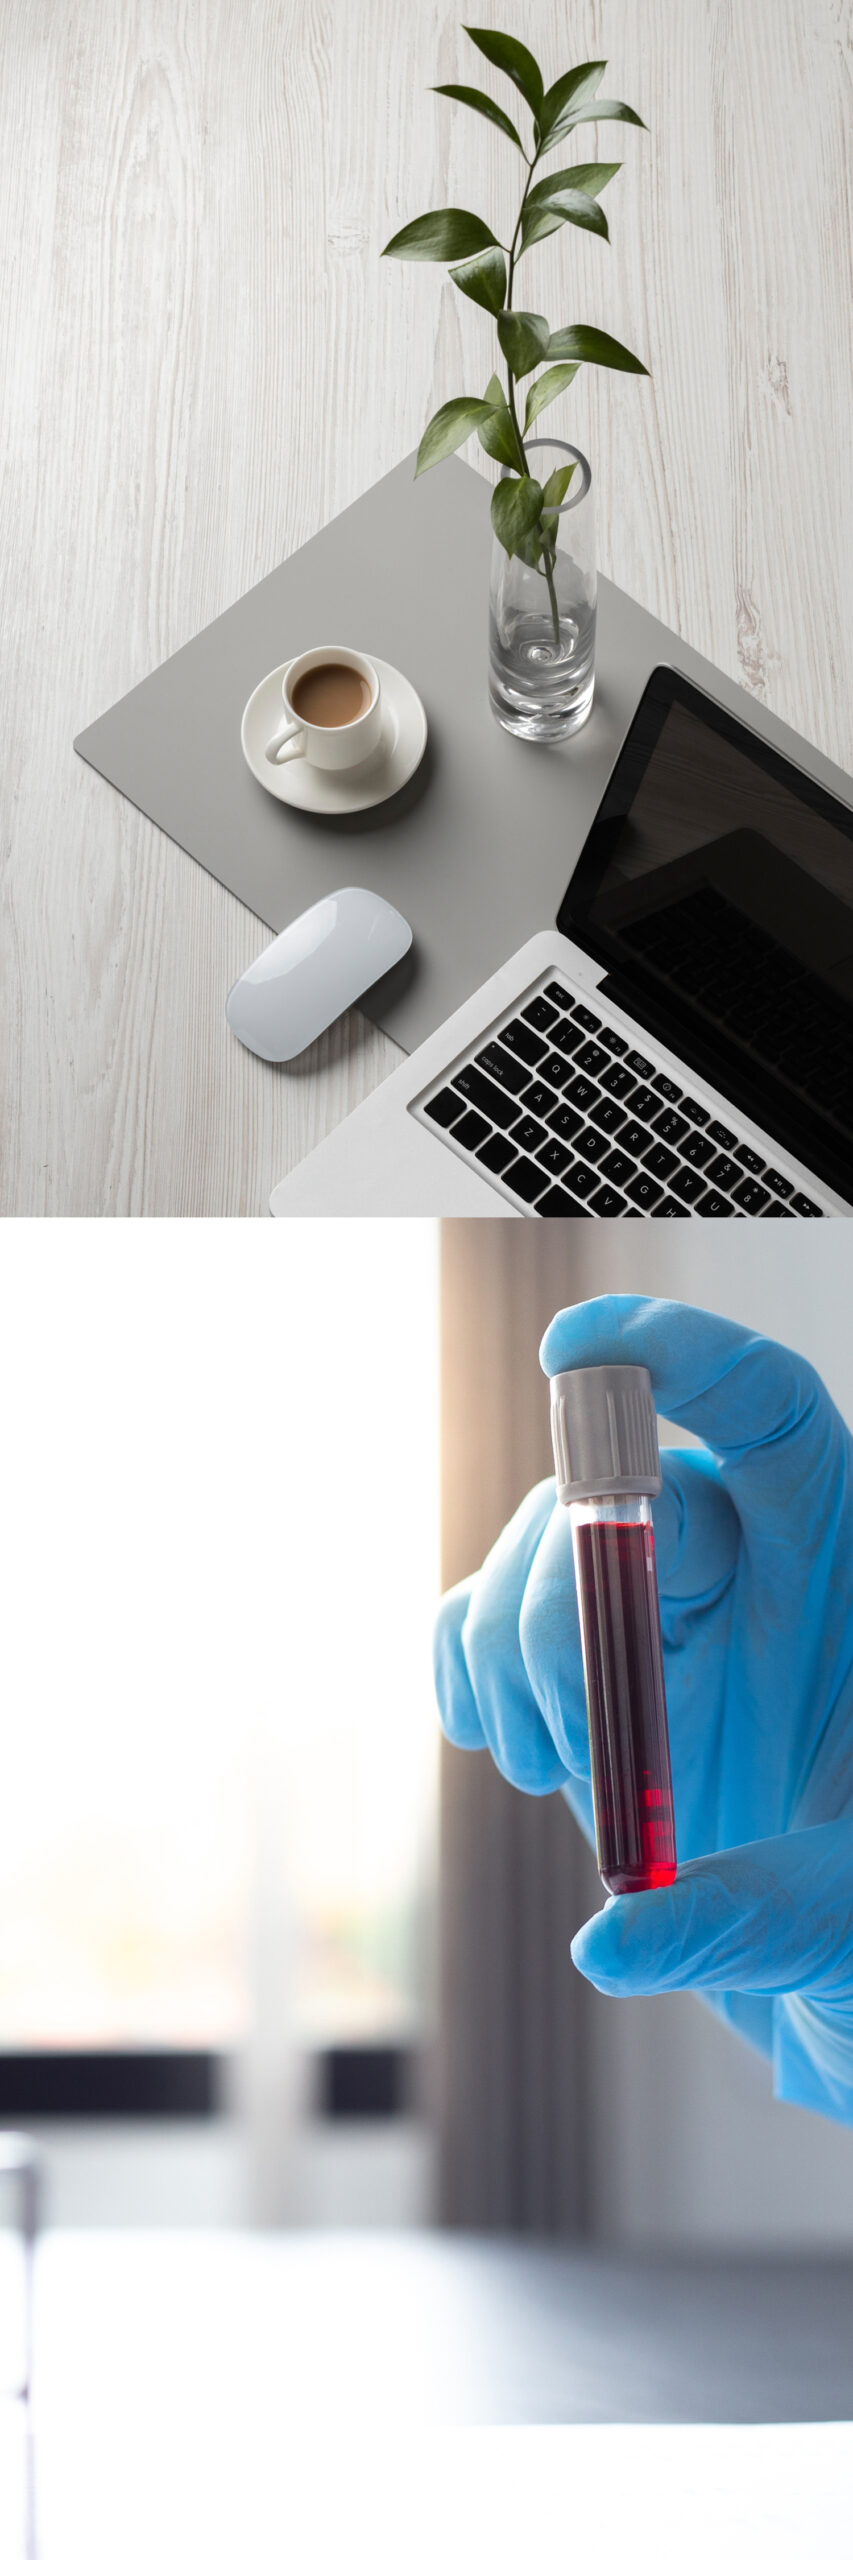 Összetett kép az otthonról elérhető szolgáltatások szemléltetéséhez, mely tartalmaz egy hangulatképet laptoppal és kávéval valamint egy ampulla vért, amit egy laborelemző tart a kezében.